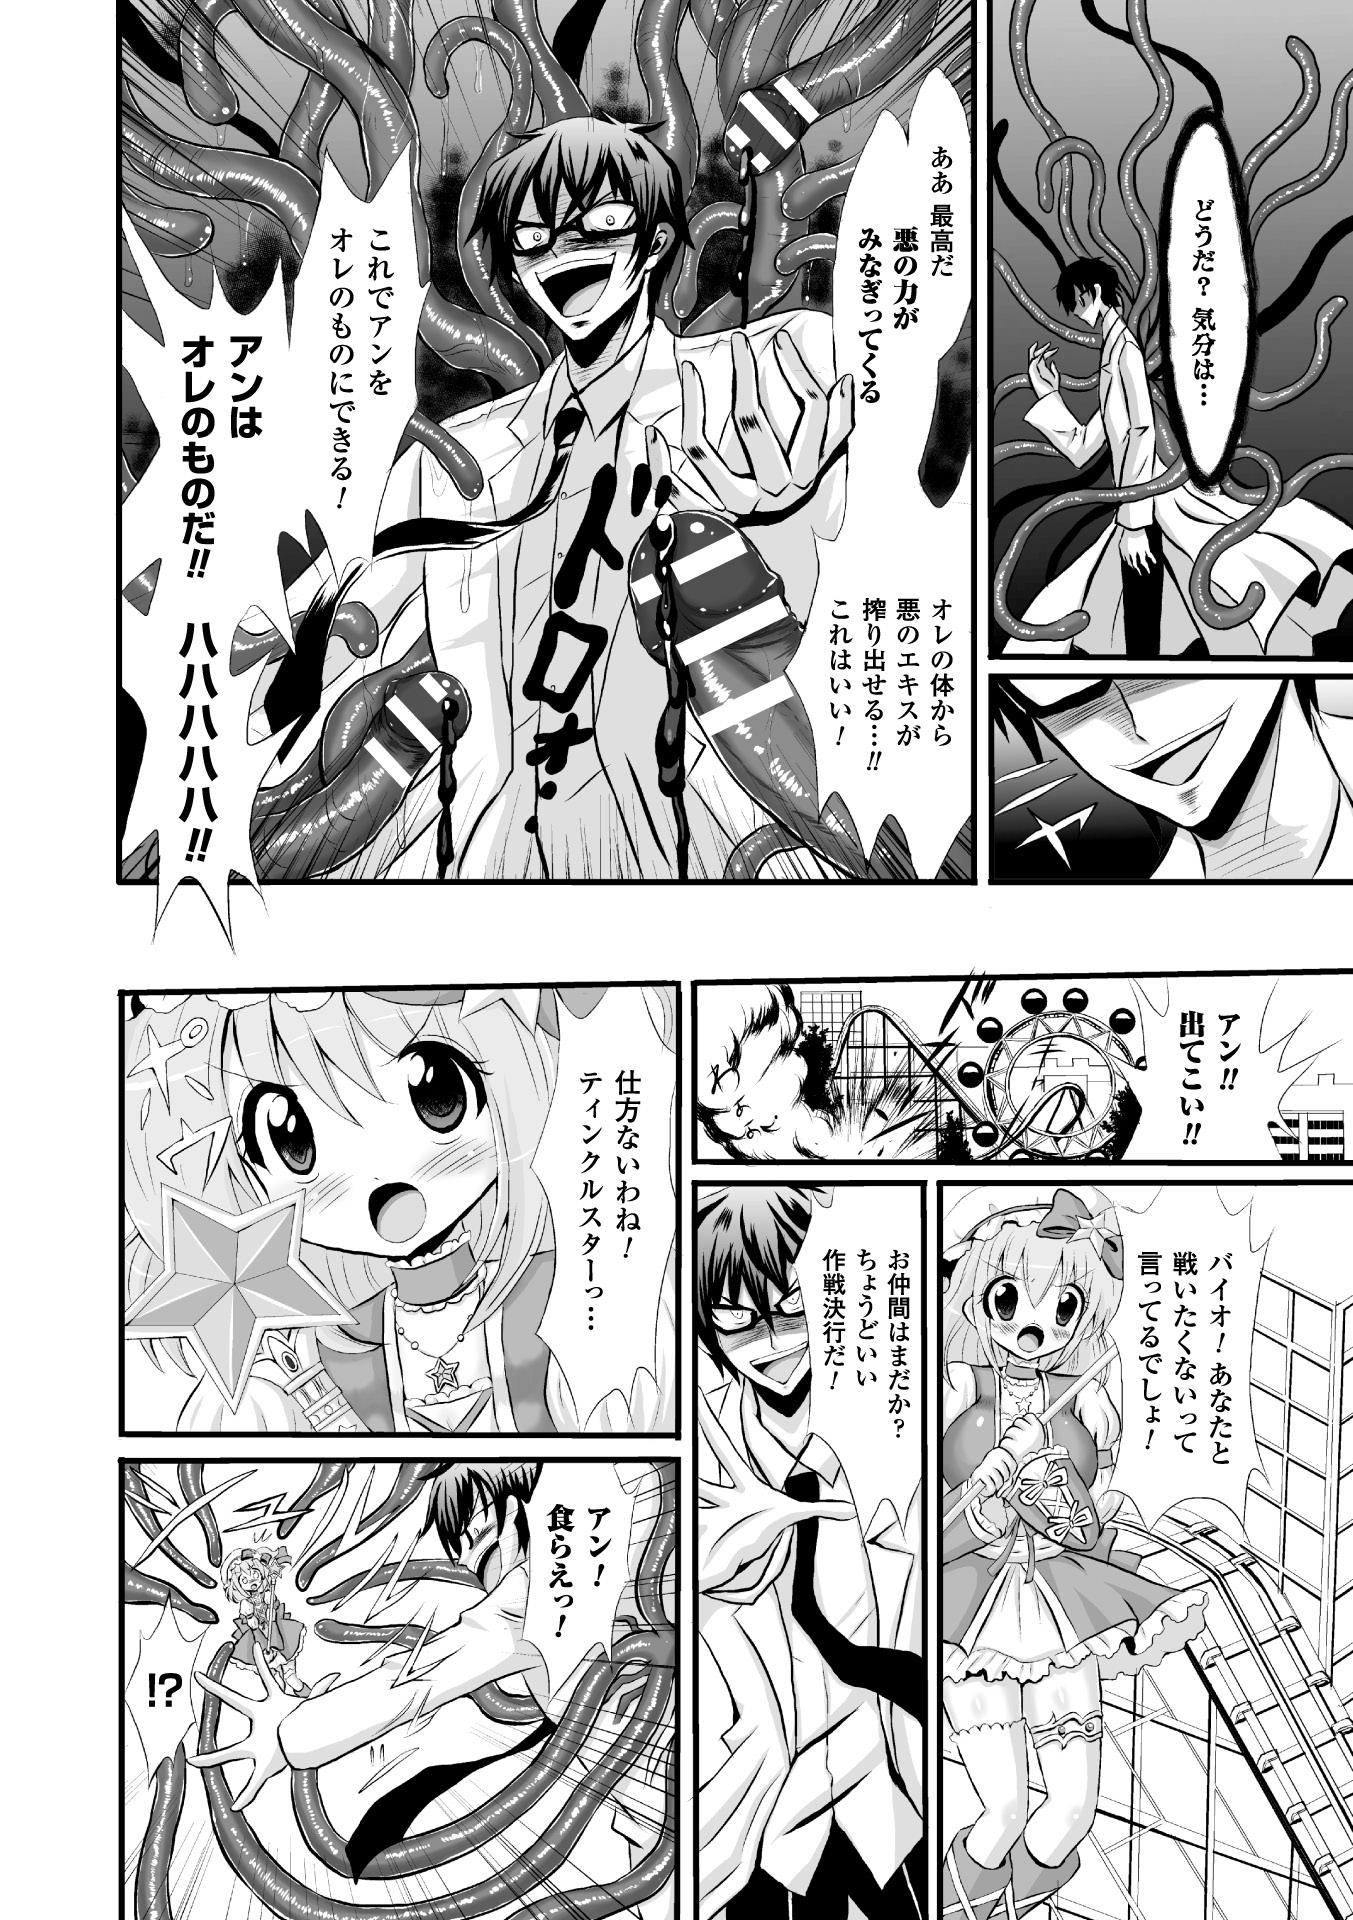 Seigi no Heroine Kangoku File Vol. 4 85